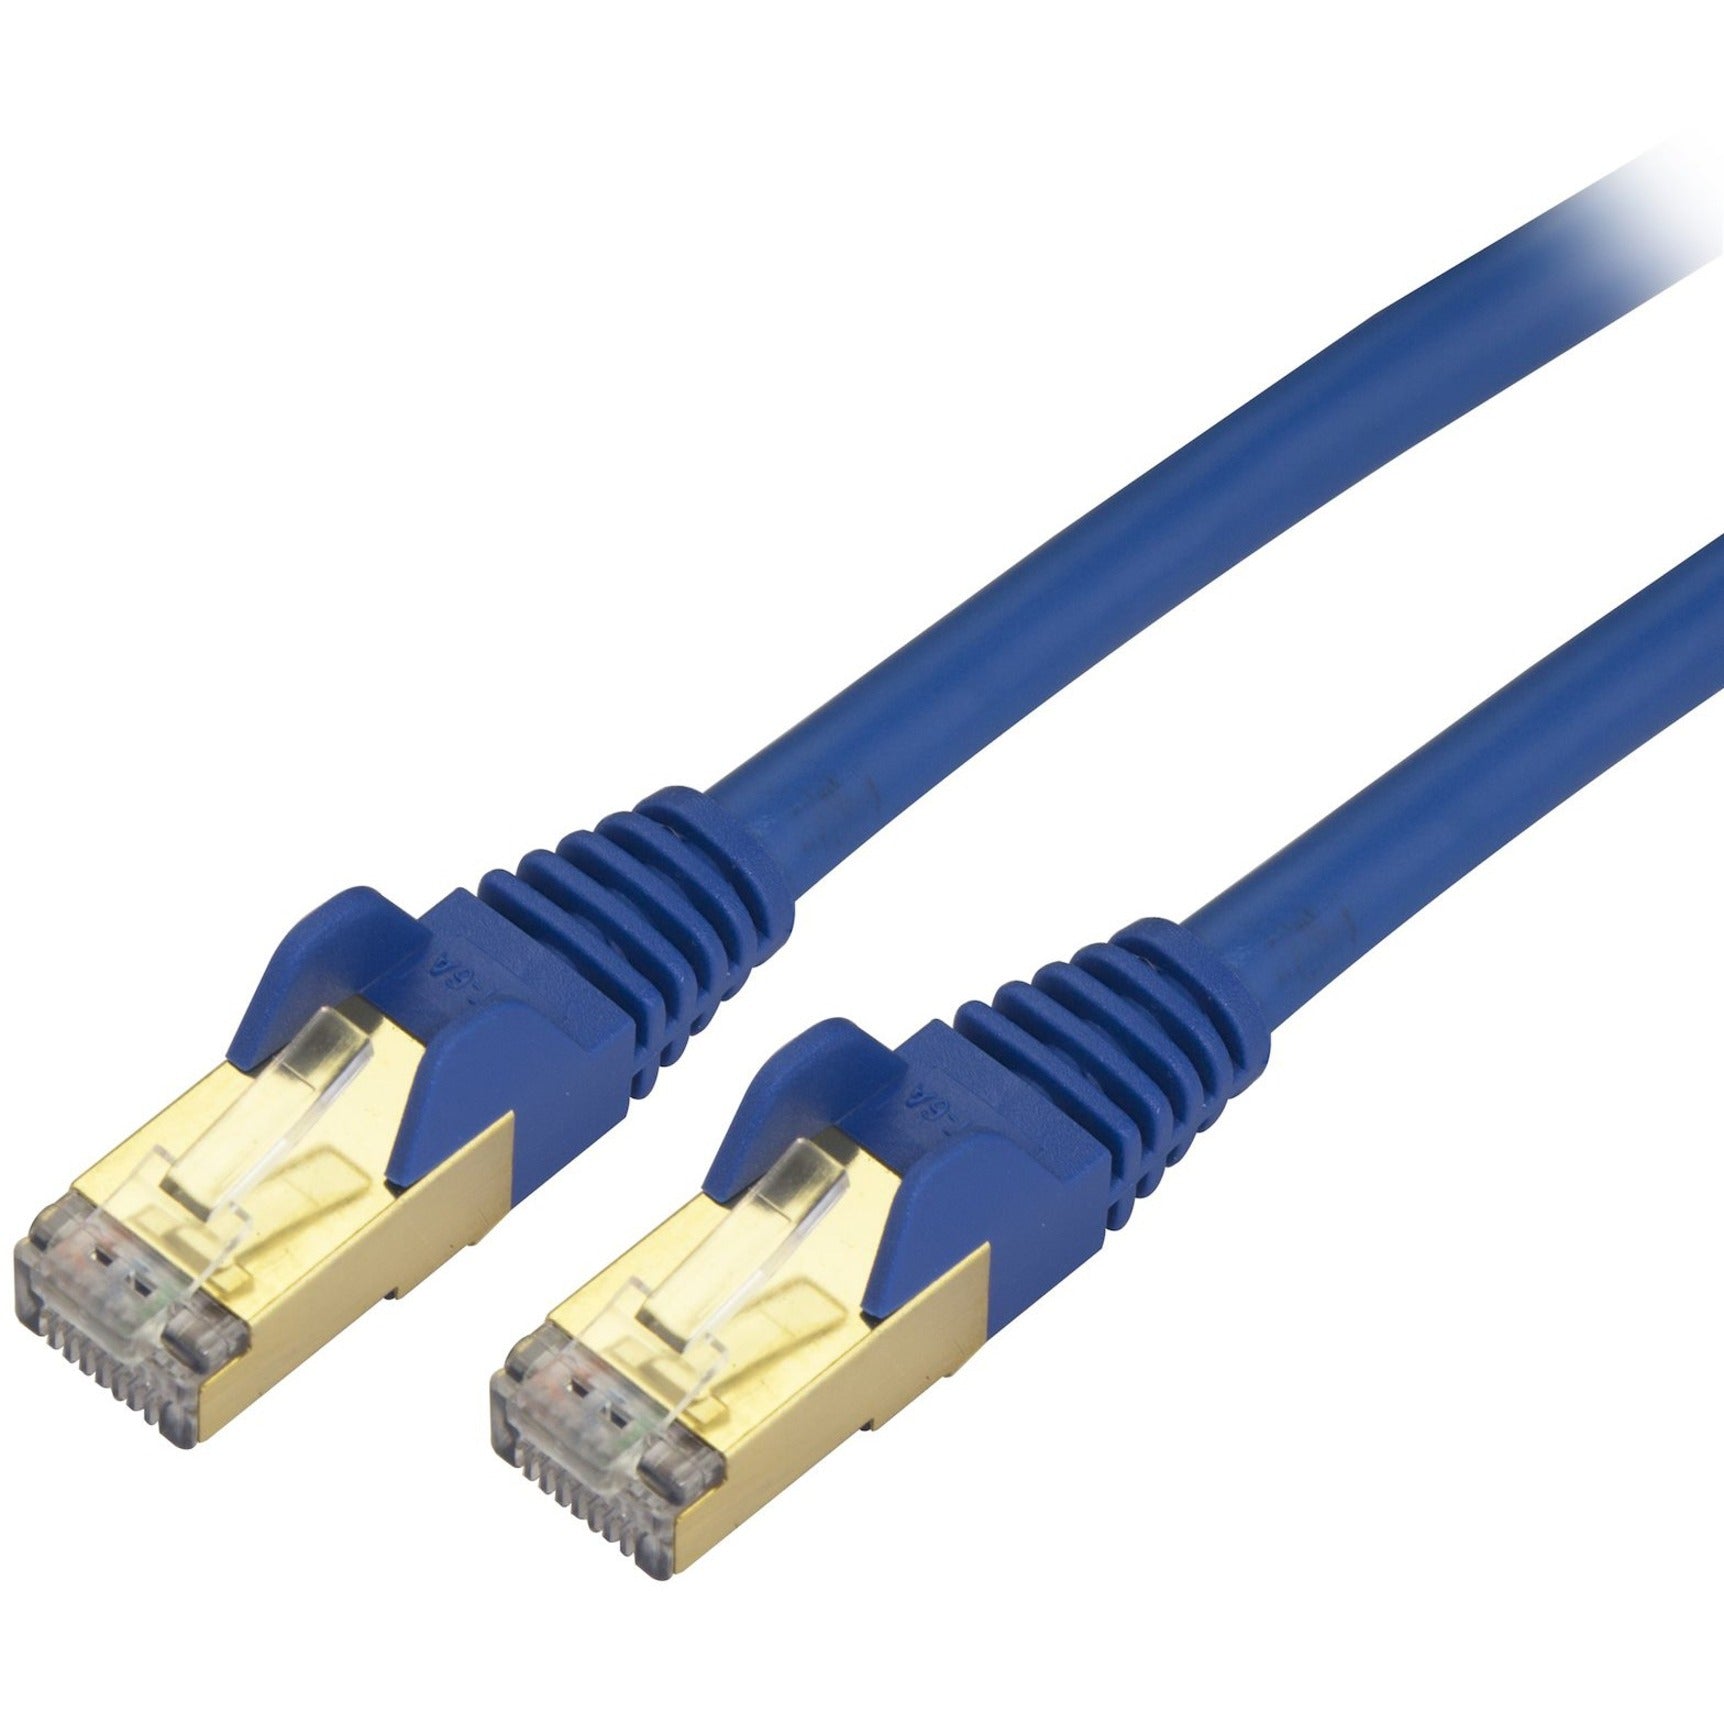 Marca: StarTech.com   Cable de parche Ethernet Cat6a blindado (STP) - 8 pies Azul Cordón Ethernet RJ45 sin enganches